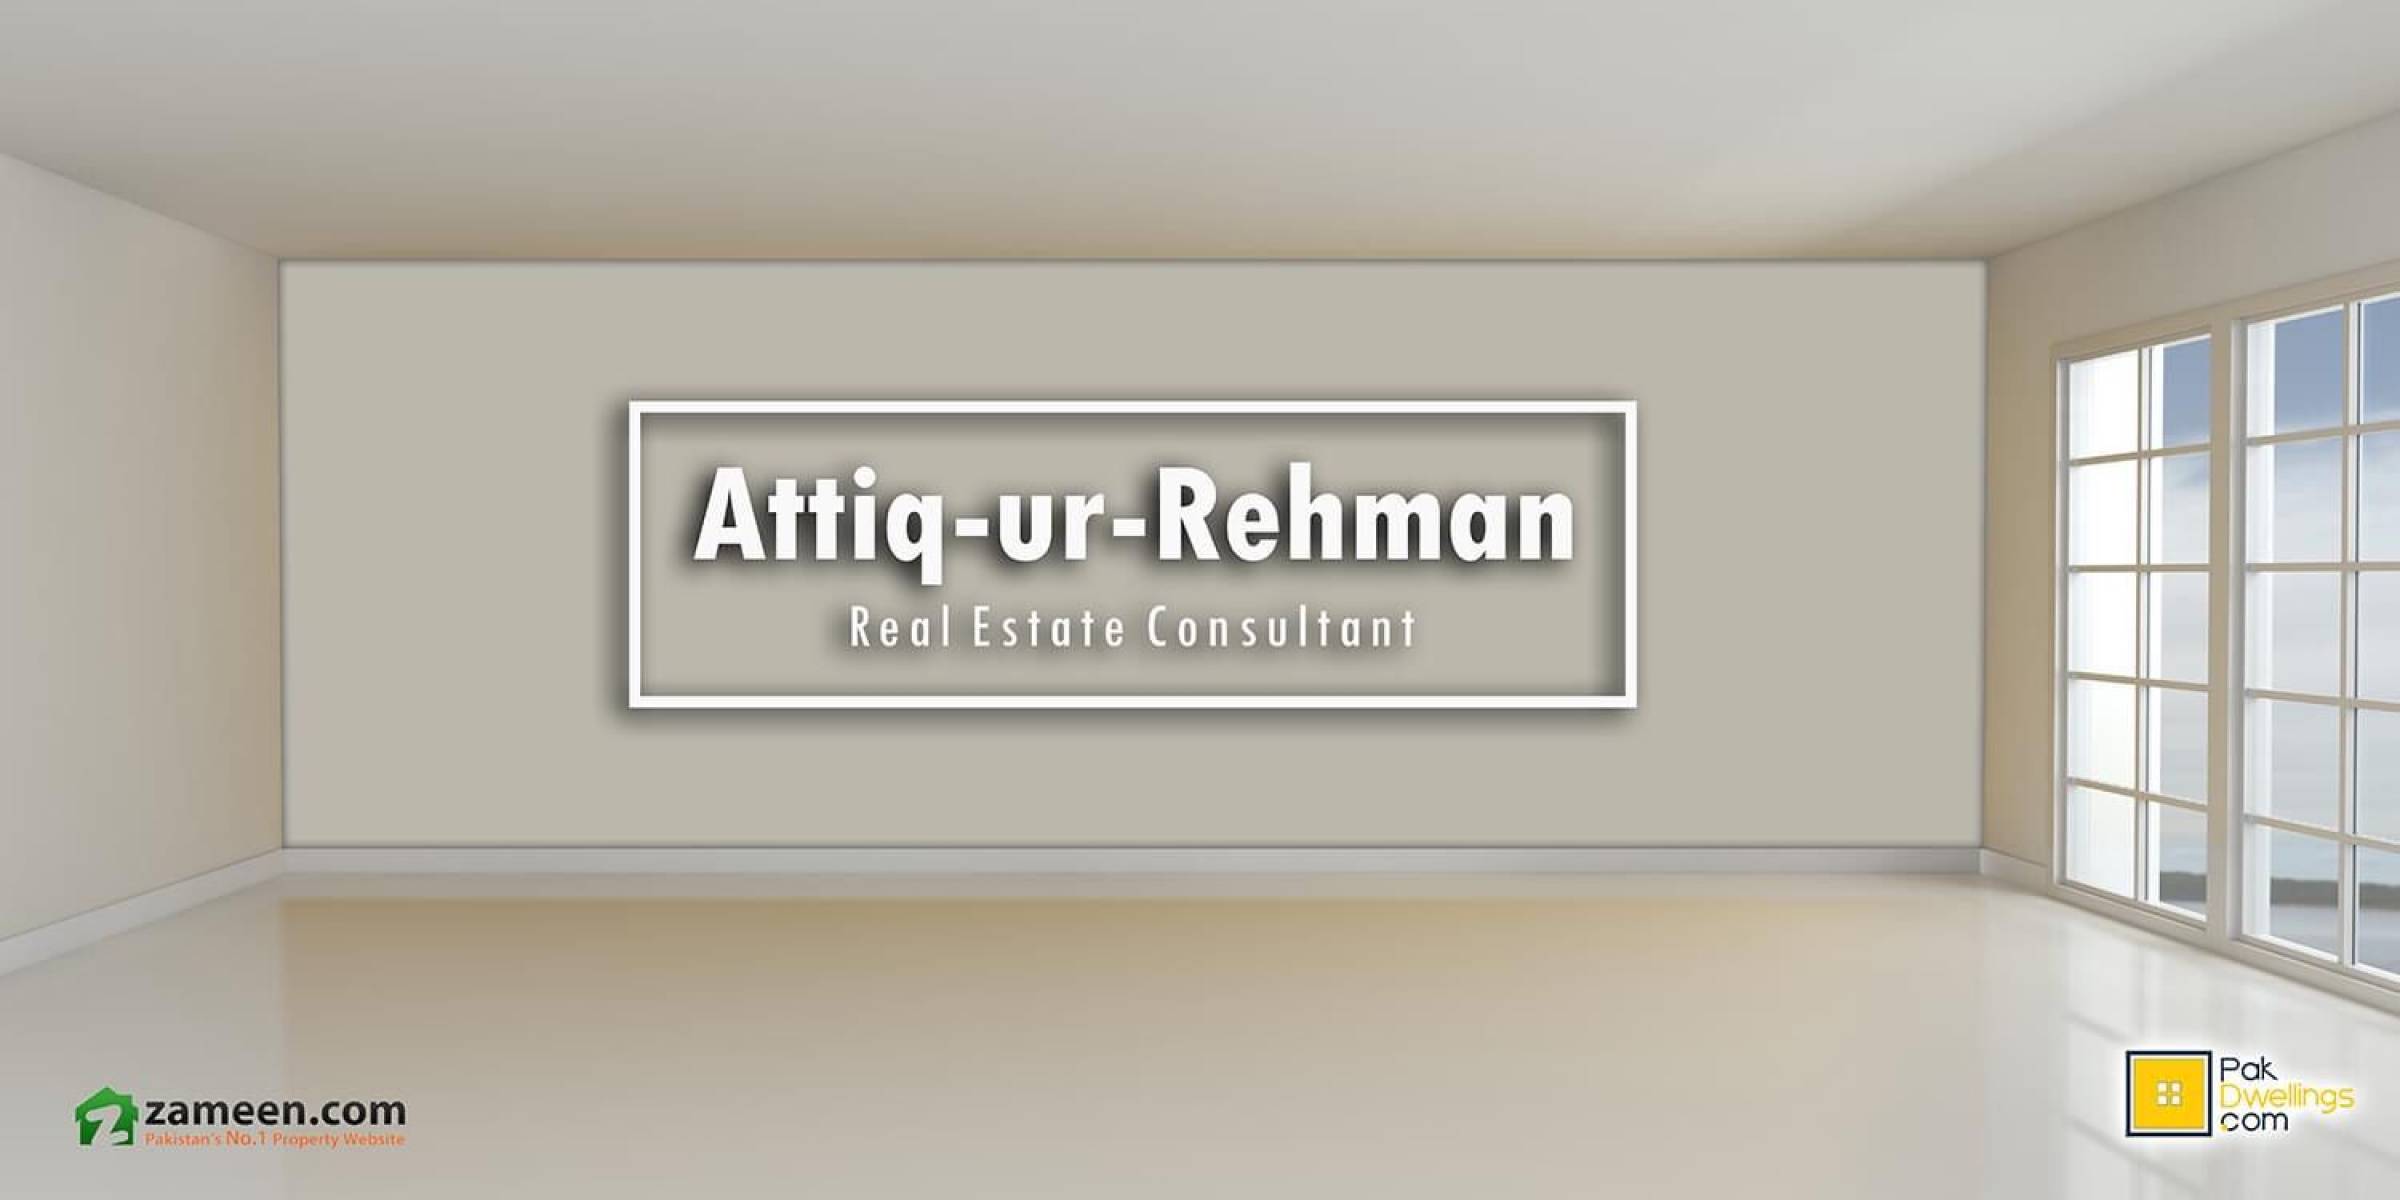 ATTIQ UR REHMAN (ZAMEEN.COM)